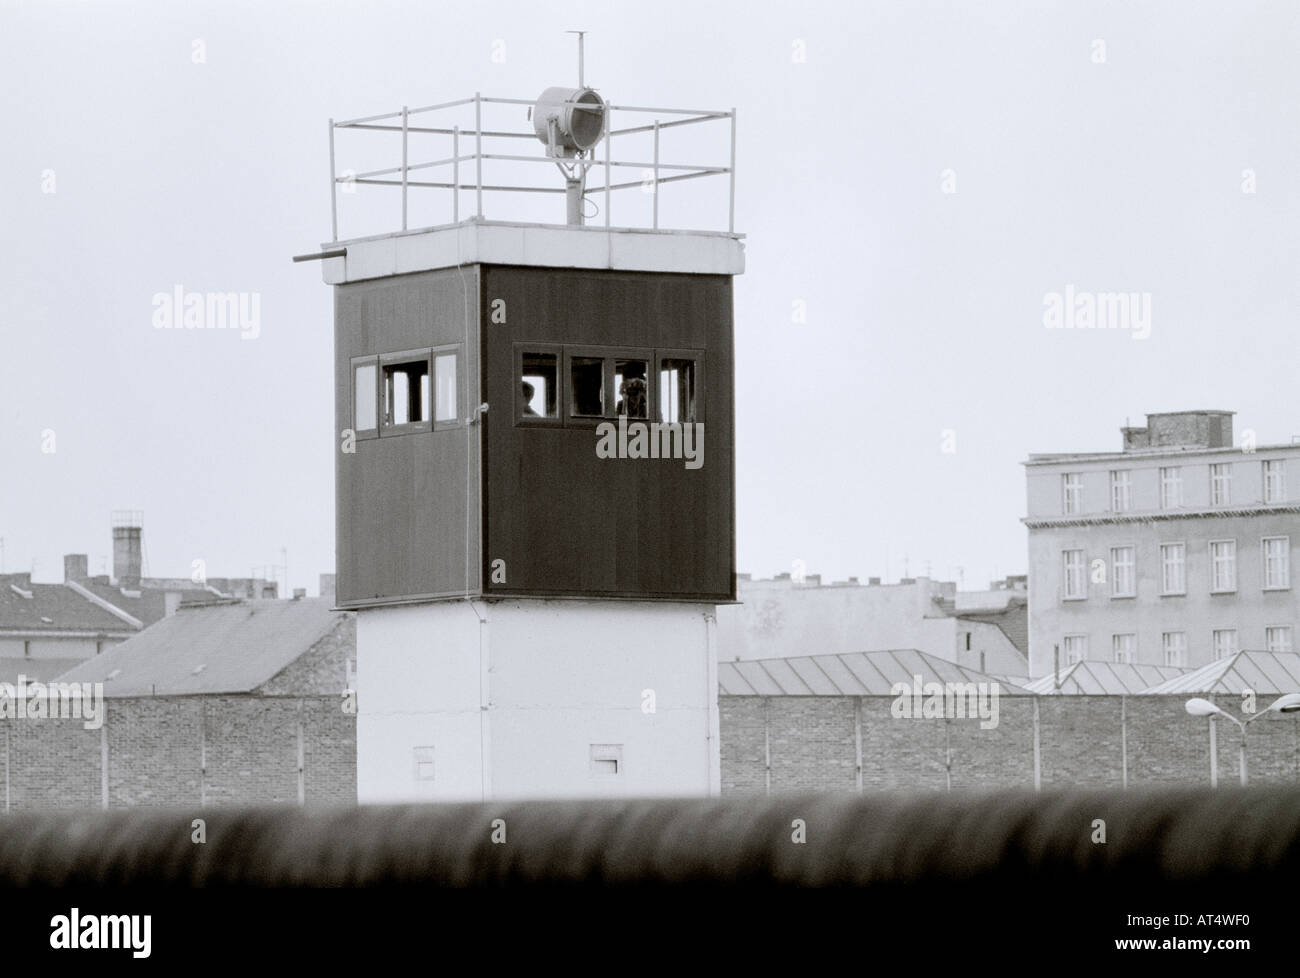 La storia europea. Striscia della morte torre di avvistamento presso lo storico muro di Berlino a Berlino Ovest in Germania in Europa durante la Guerra Fredda. Storico Foto Stock